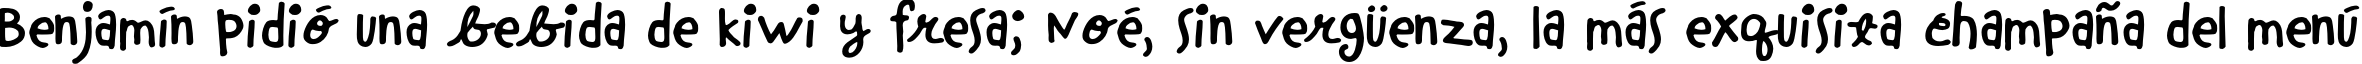 Пример написания шрифтом Chinchilla текста на испанском